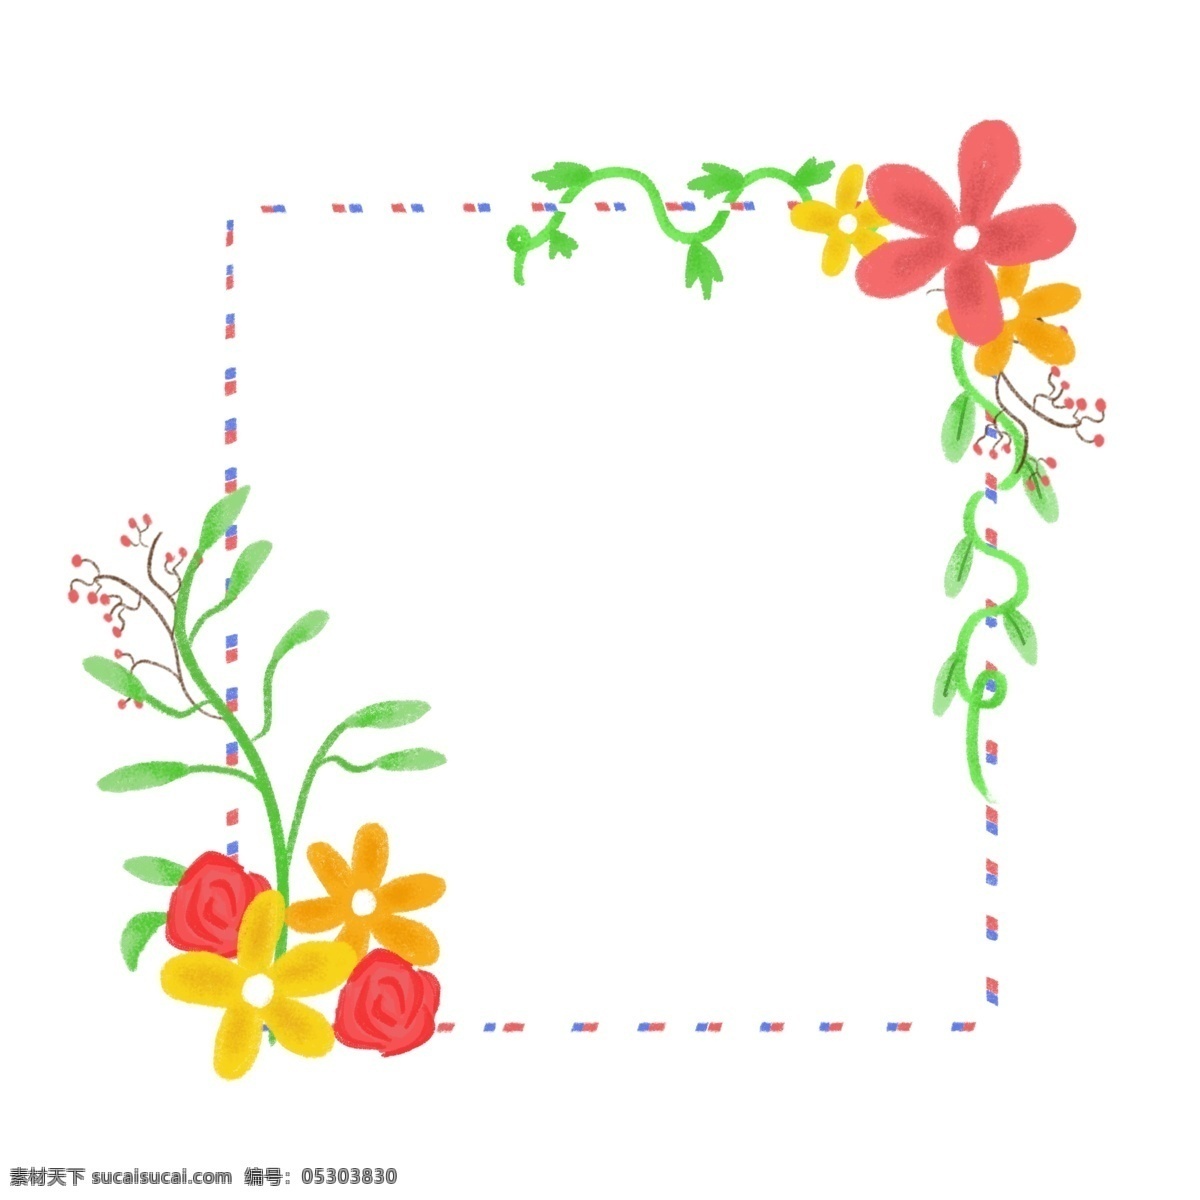 手绘 花朵 花卉 植物 绿植 边框 植物边框 花朵边框 花卉边框 手绘植物边框 手绘花朵边框 手绘花卉边框